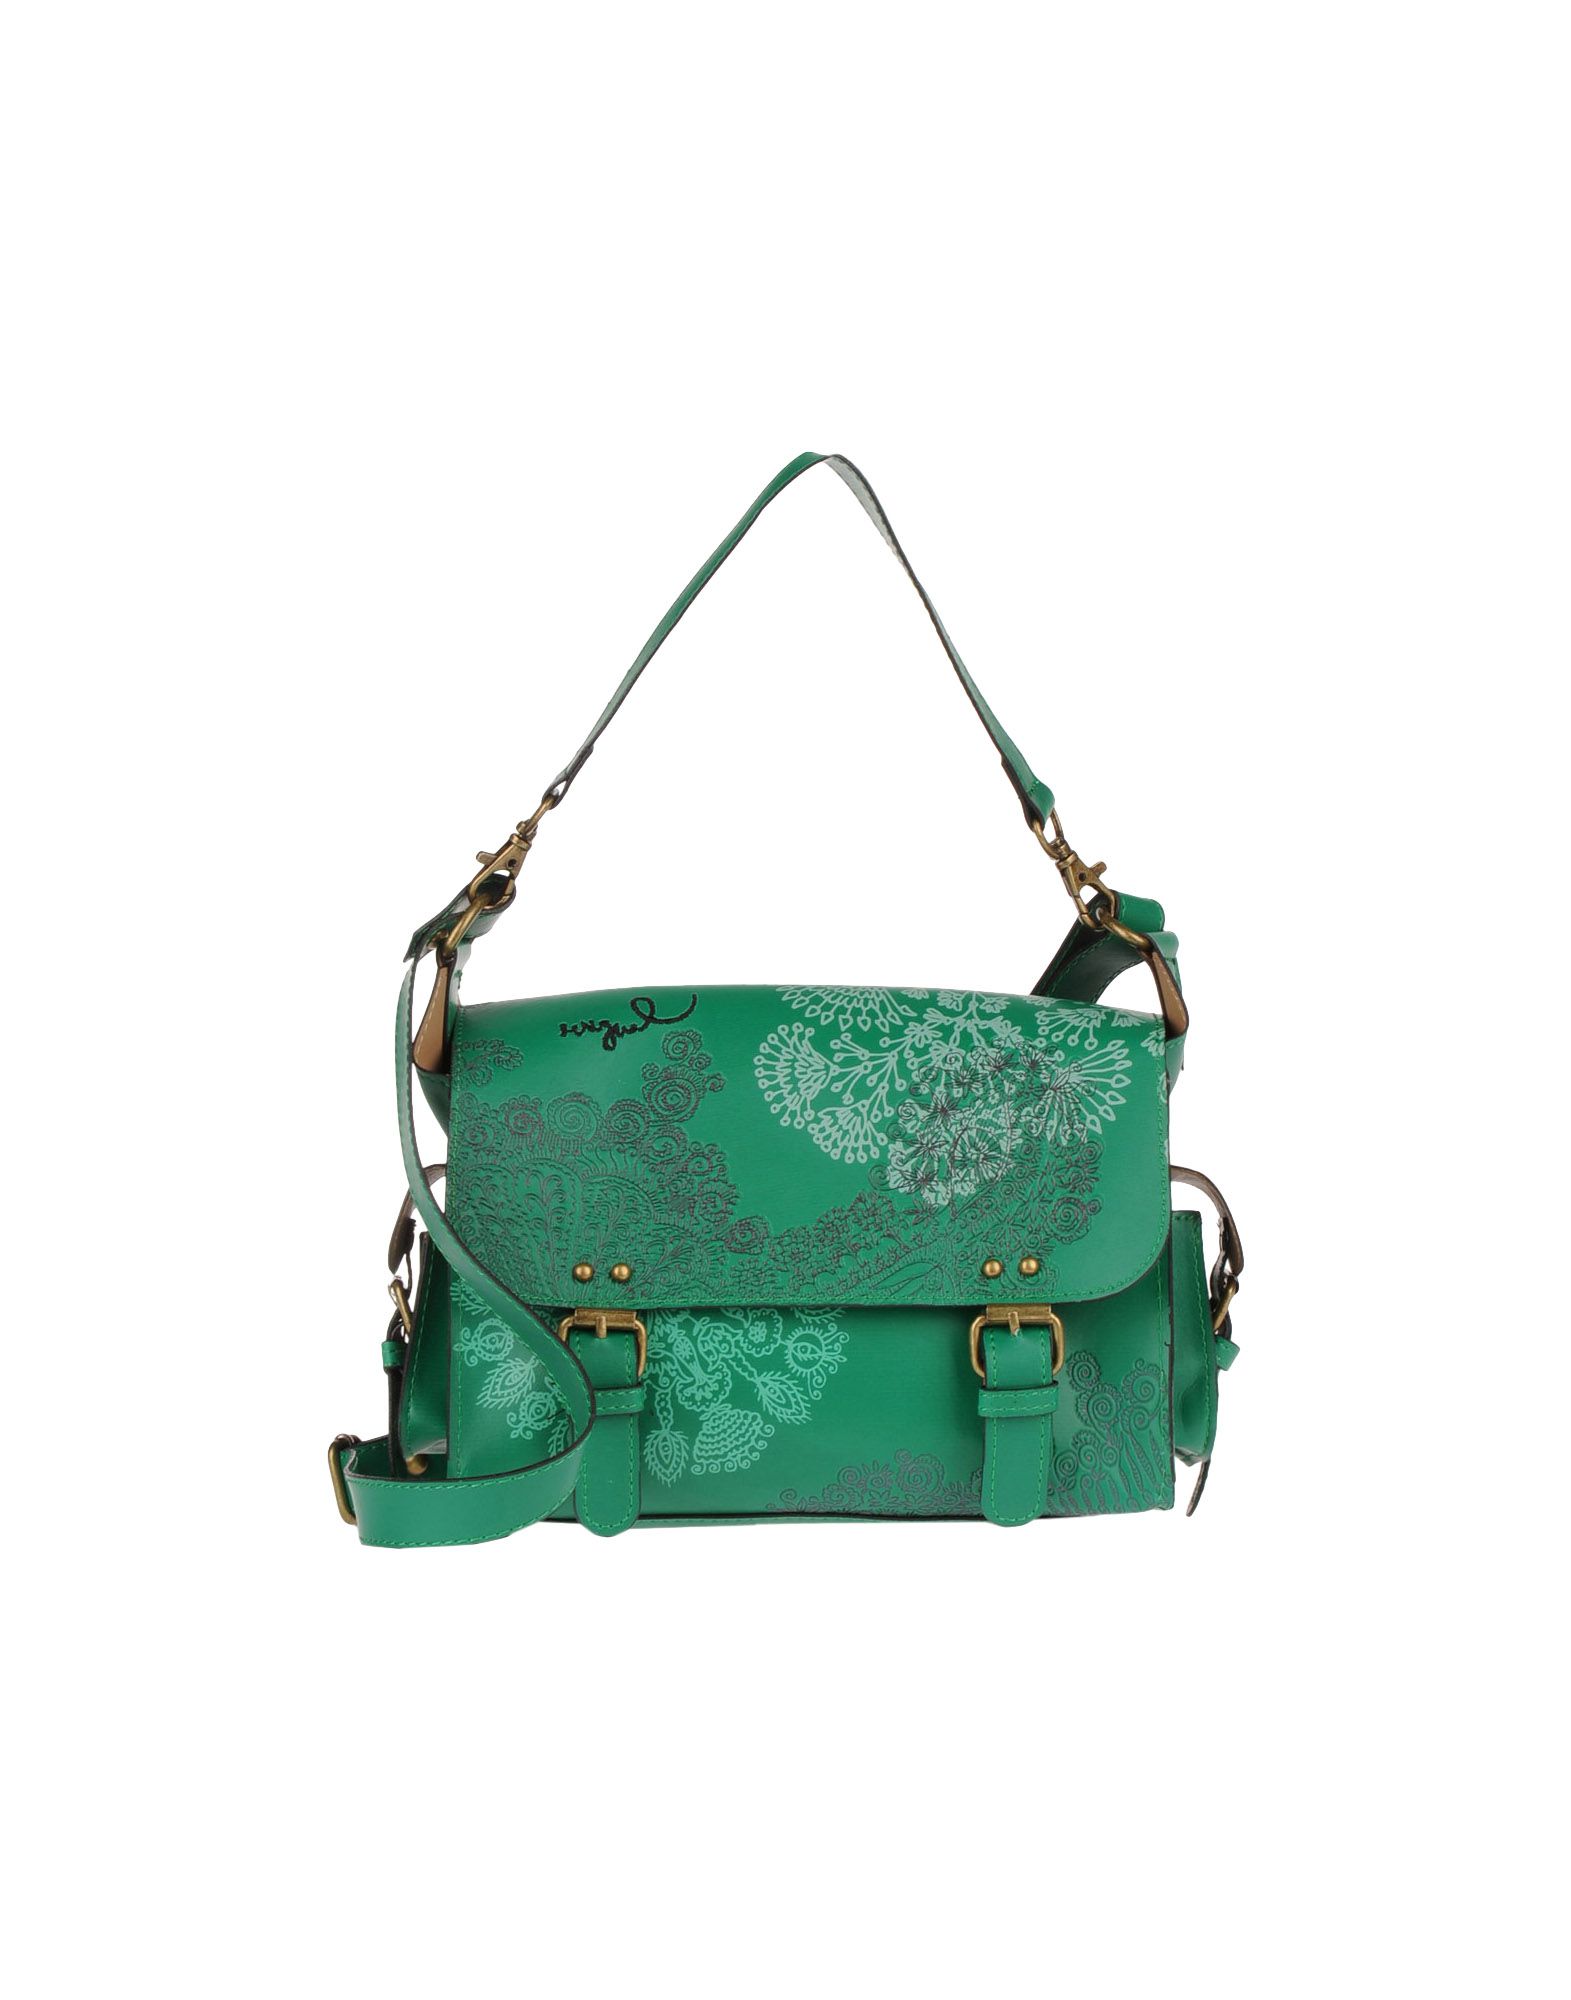 Foto desigual bolsos medianos de tela Mujer Verde